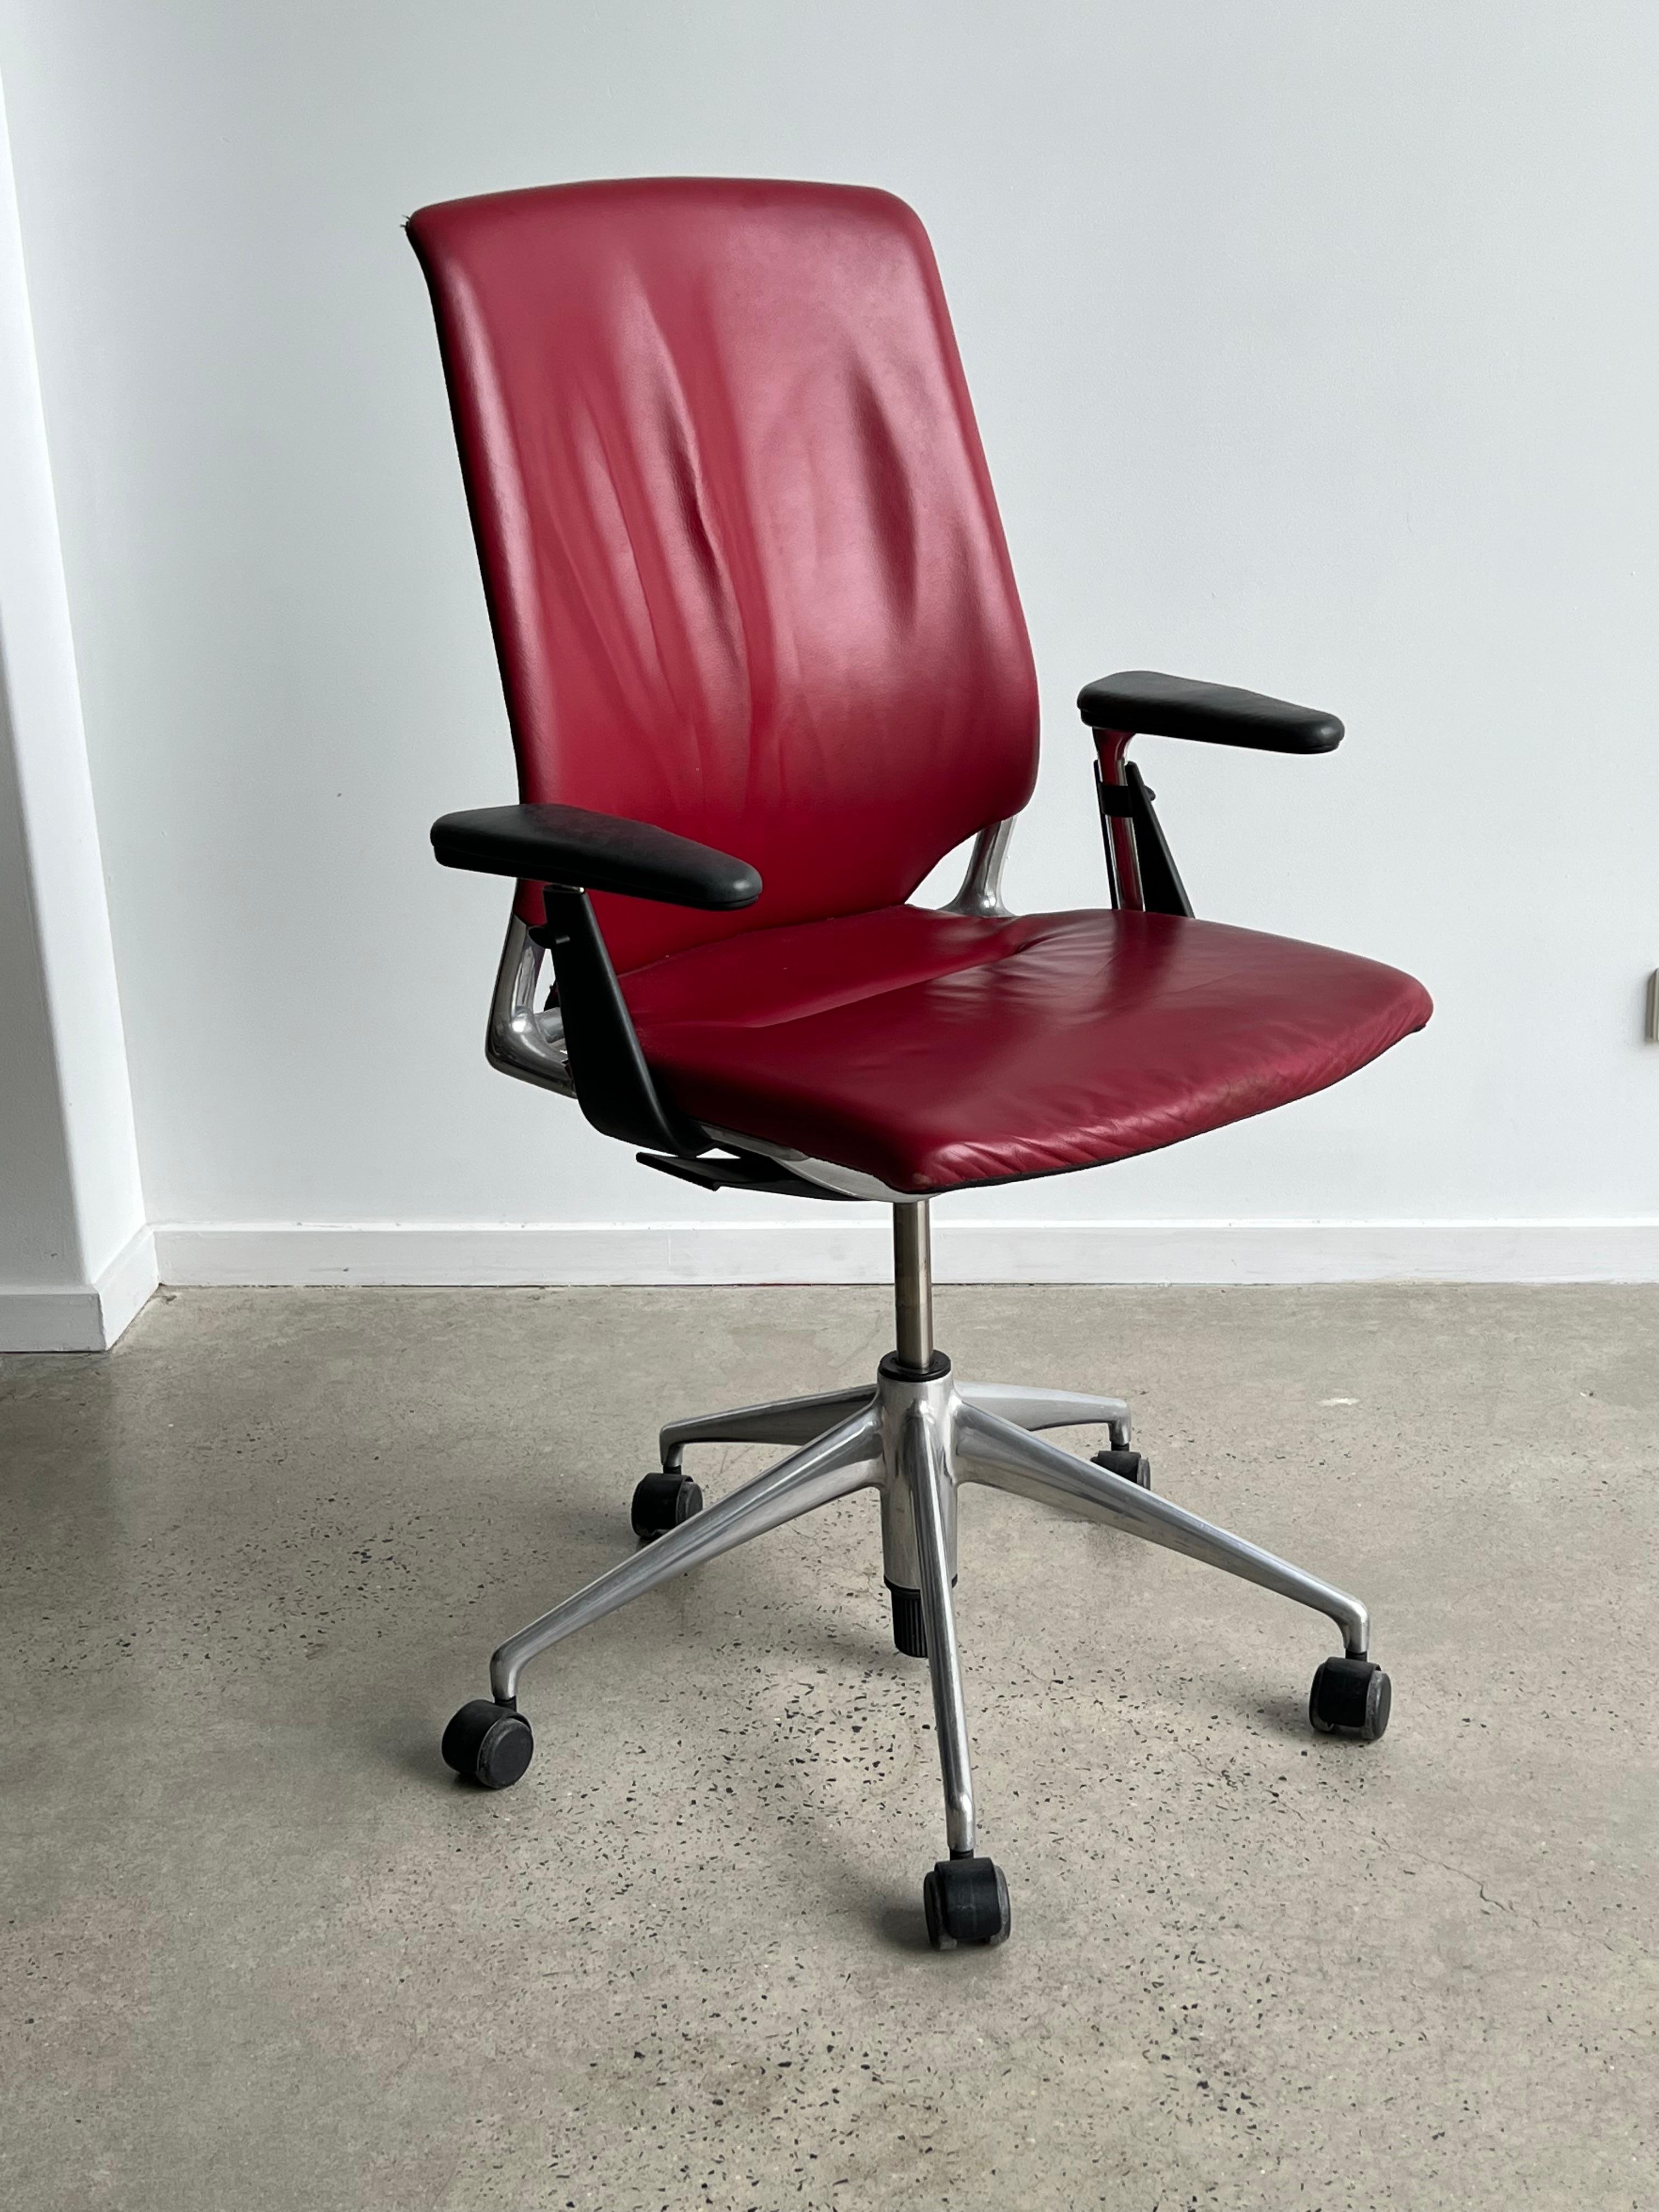 Bürostuhl aus rotem Leder und Aluminium, verstellbar, von Alberto Meda für Vitra 1990
Perfekter Betriebszustand.